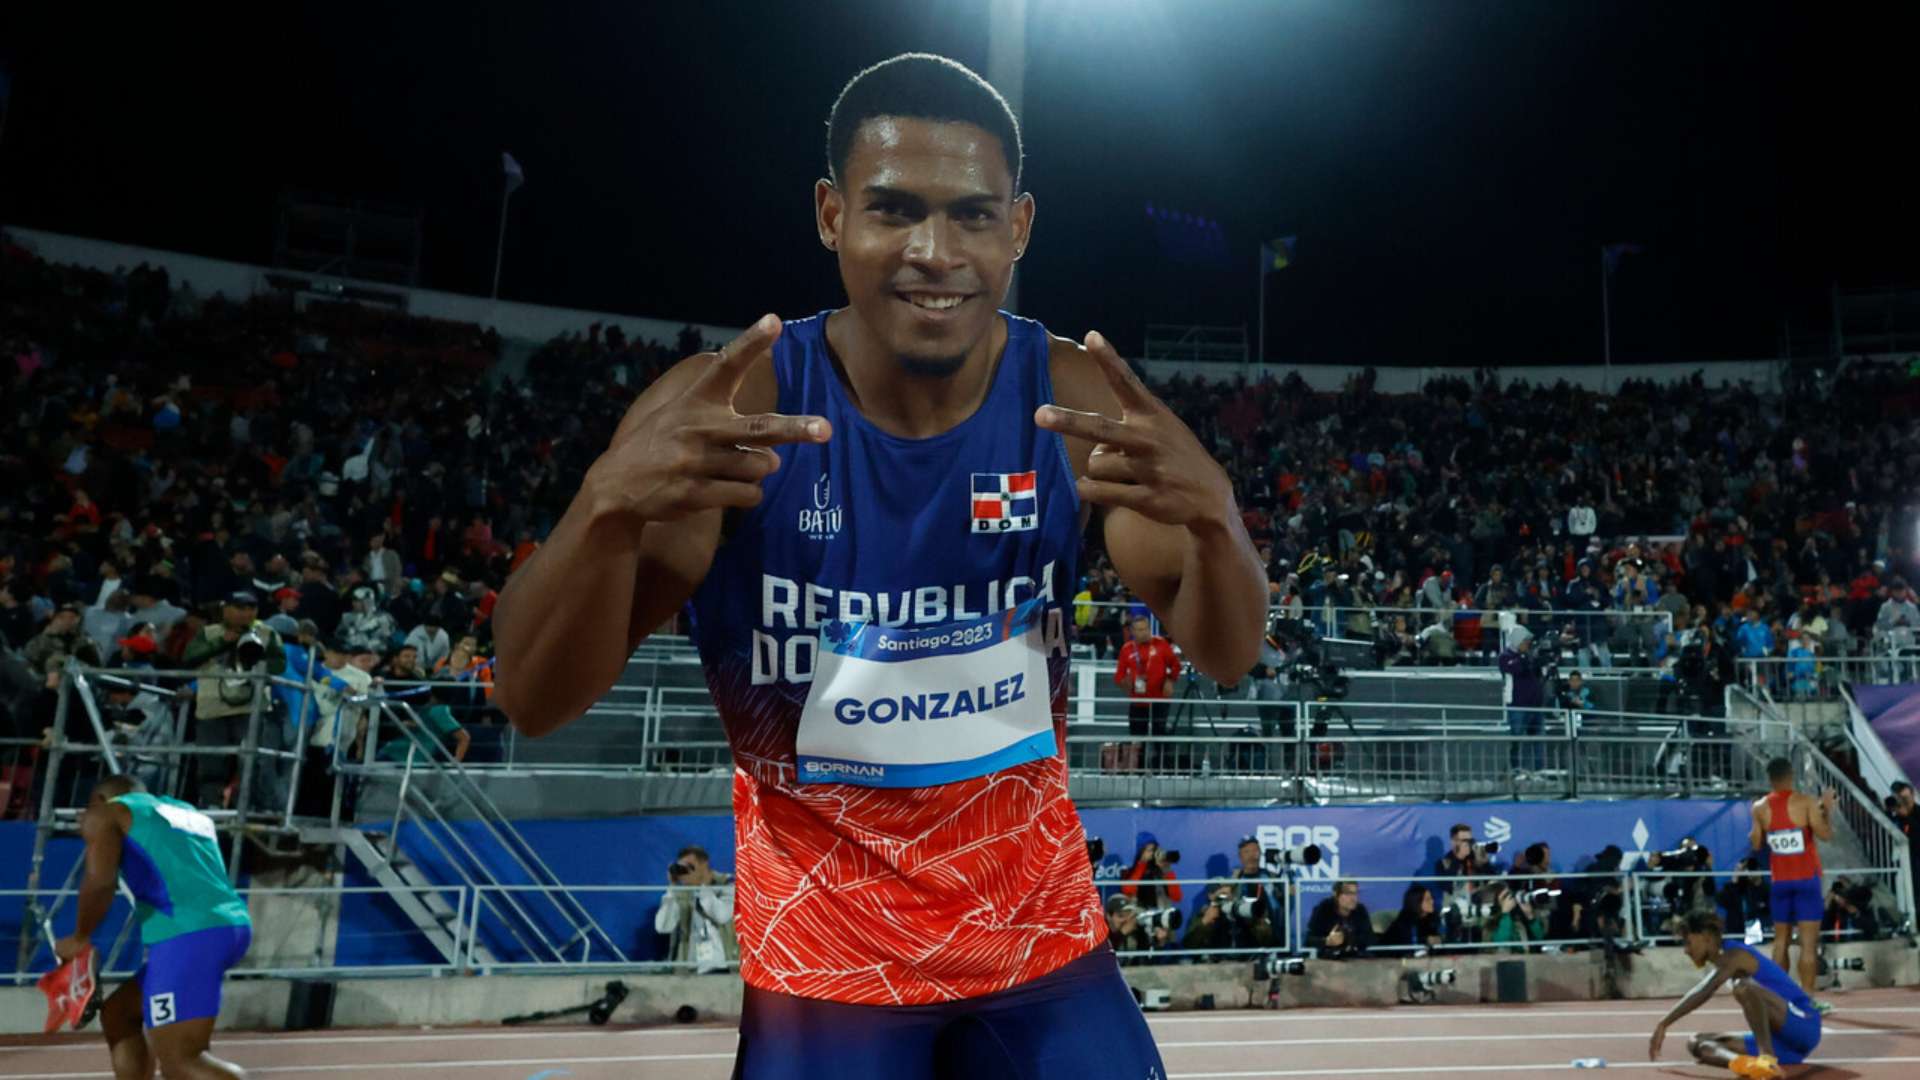 Dominican José González wins gold in 100 meters